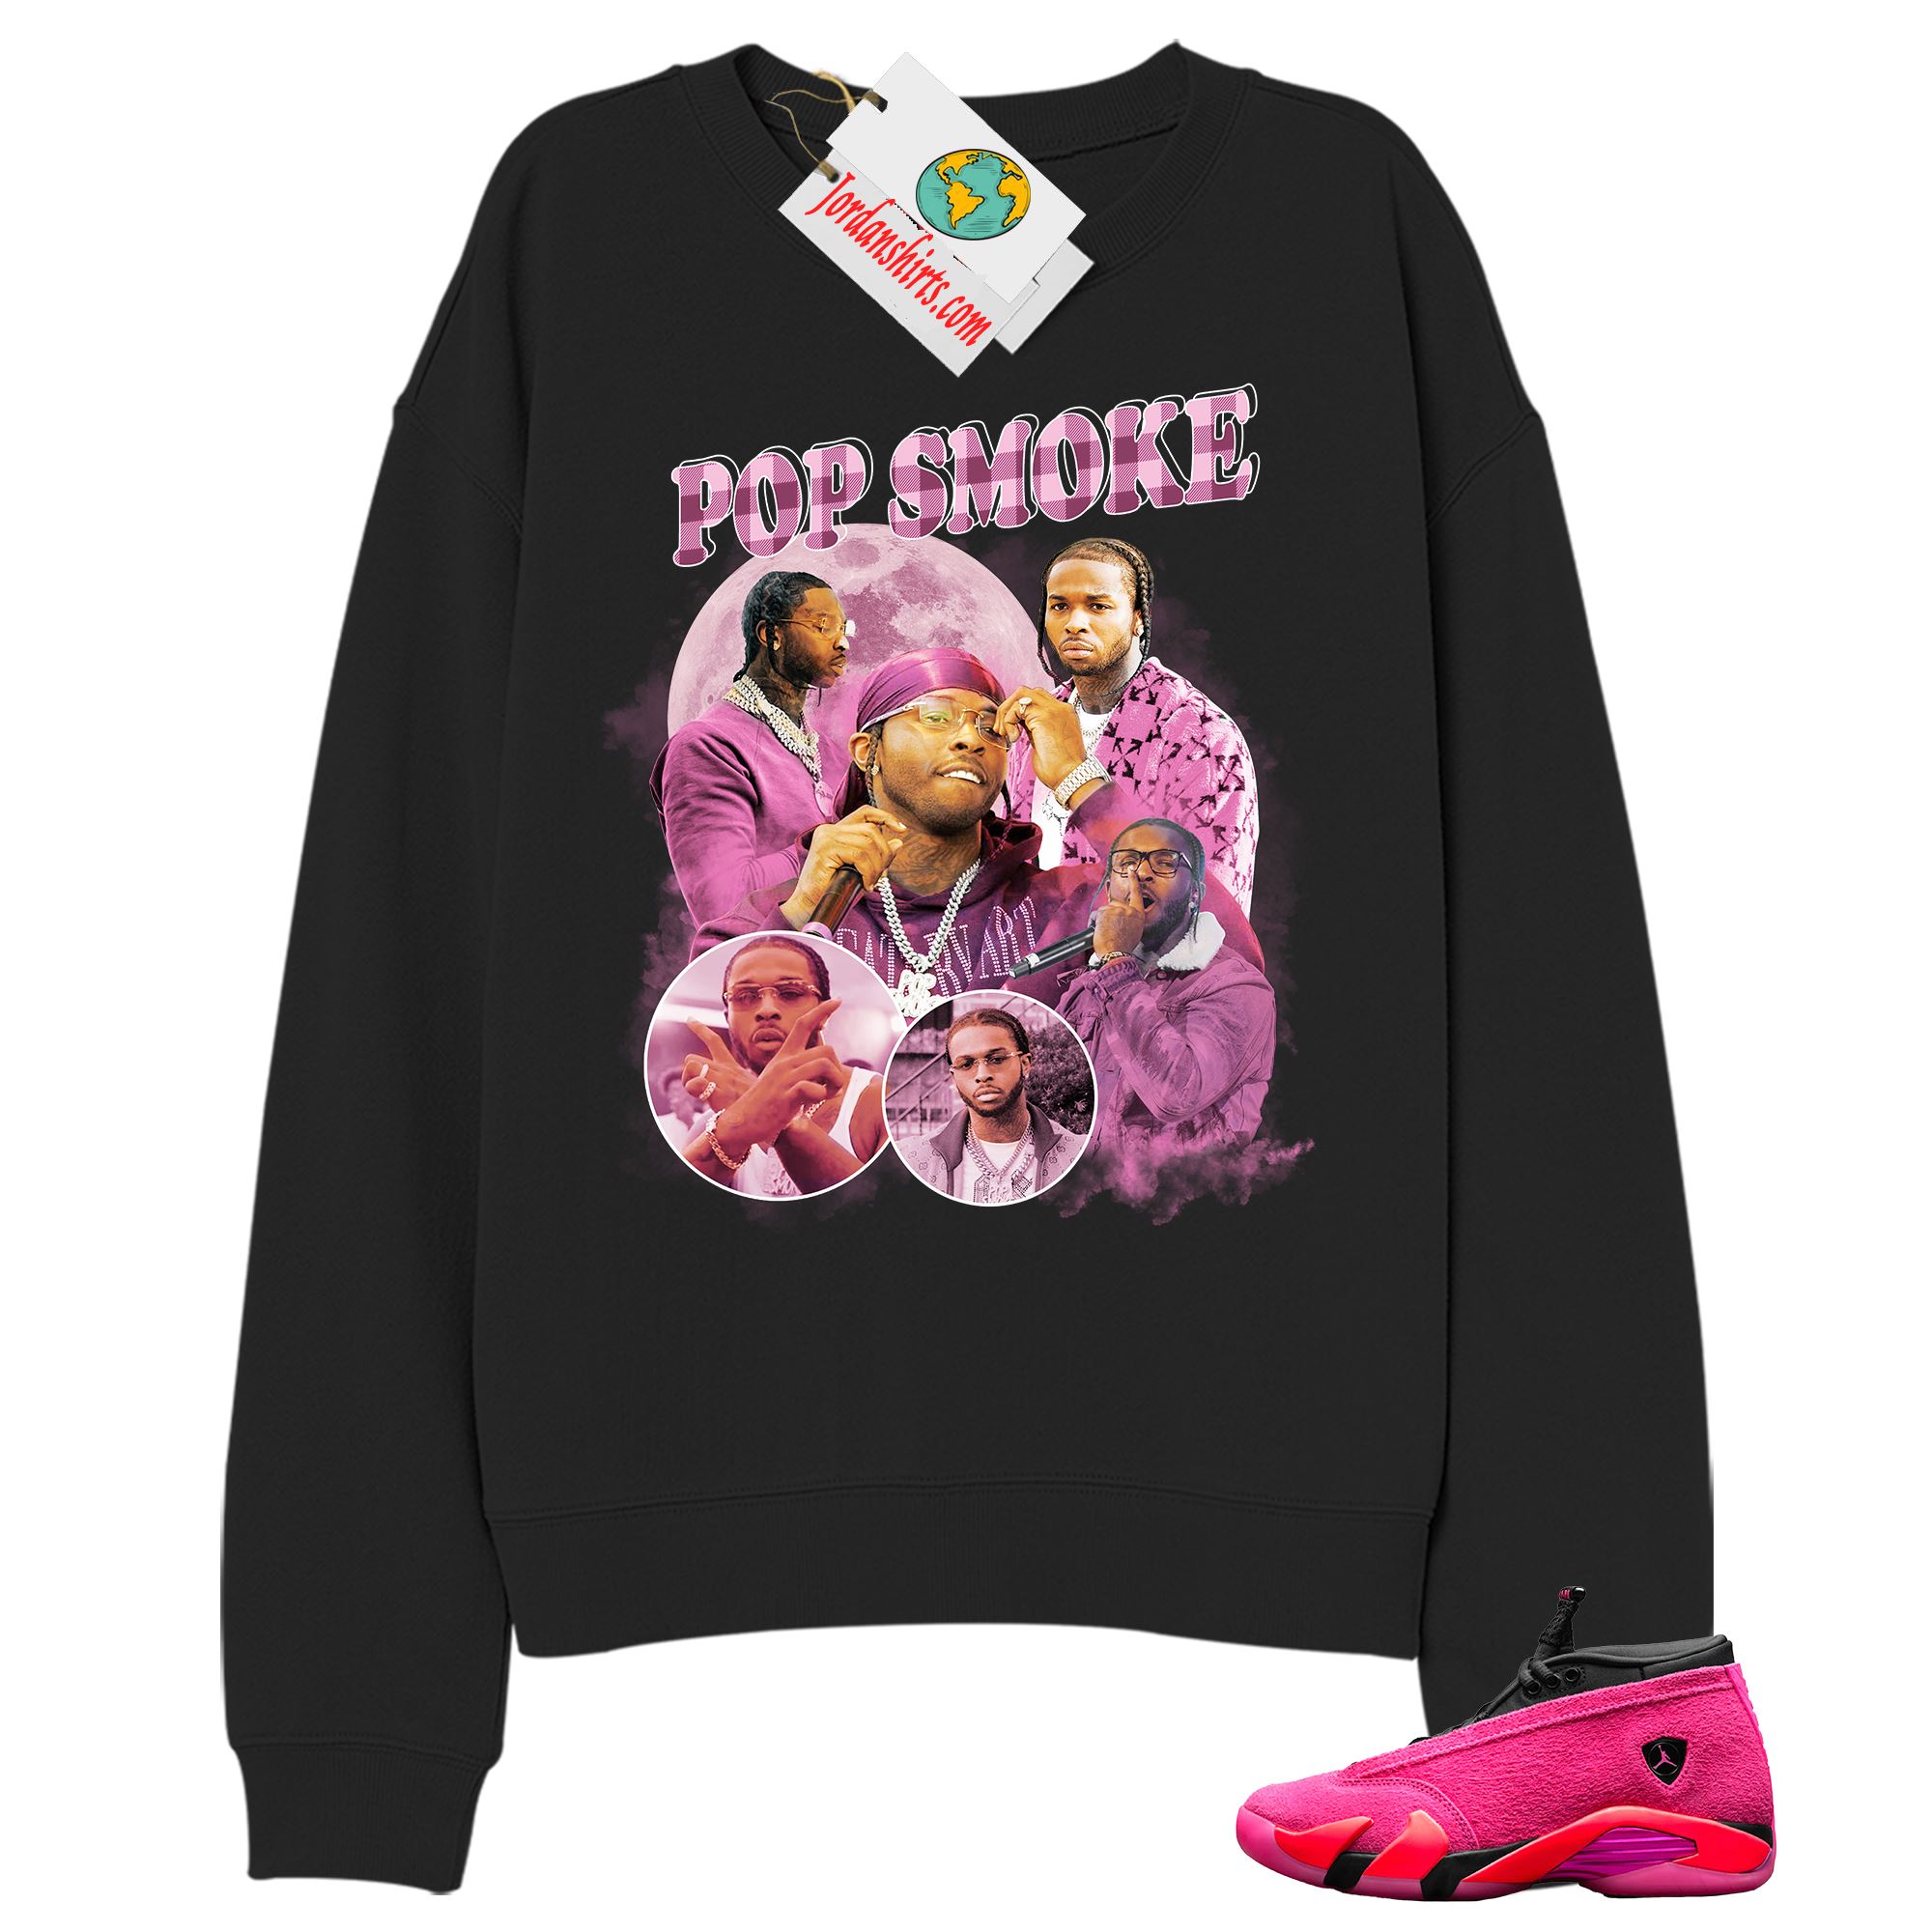 Jordan 14 Sweatshirt, Pop Smoke Bootleg Vintage Raptee Black Sweatshirt Air Jordan 14 Wmns Shocking Pink 14s Size Up To 5xl